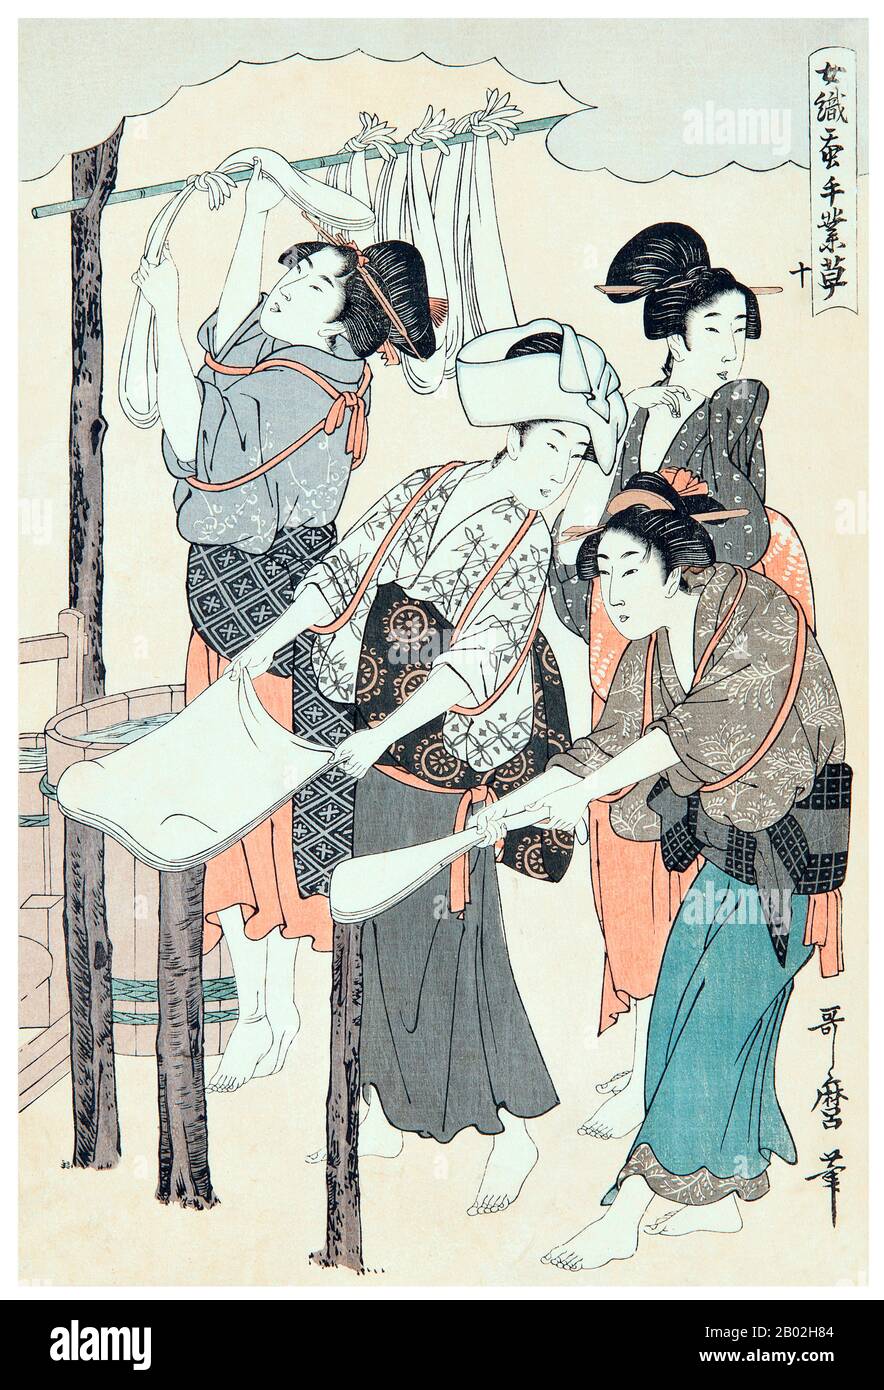 10. « secouer la soie fil », représentant deux femmes qui étirent la soie fil en se tordant autour de poteaux en bois, une autre fille en arrière-plan accrochant la soie dans les skeins sur une tige de bambou. Kitagawa Utamaro (env. 1753 - 31 octobre 1806) était un peintre et graveur japonais, considéré comme l'un des plus grands artistes de gravures de bois (ukiyo-e). Il est surtout connu pour ses études magistralement composées de femmes, connues sous le nom de bijinga. Il a également produit des études sur la nature, notamment des livres illustrés d'insectes. Banque D'Images